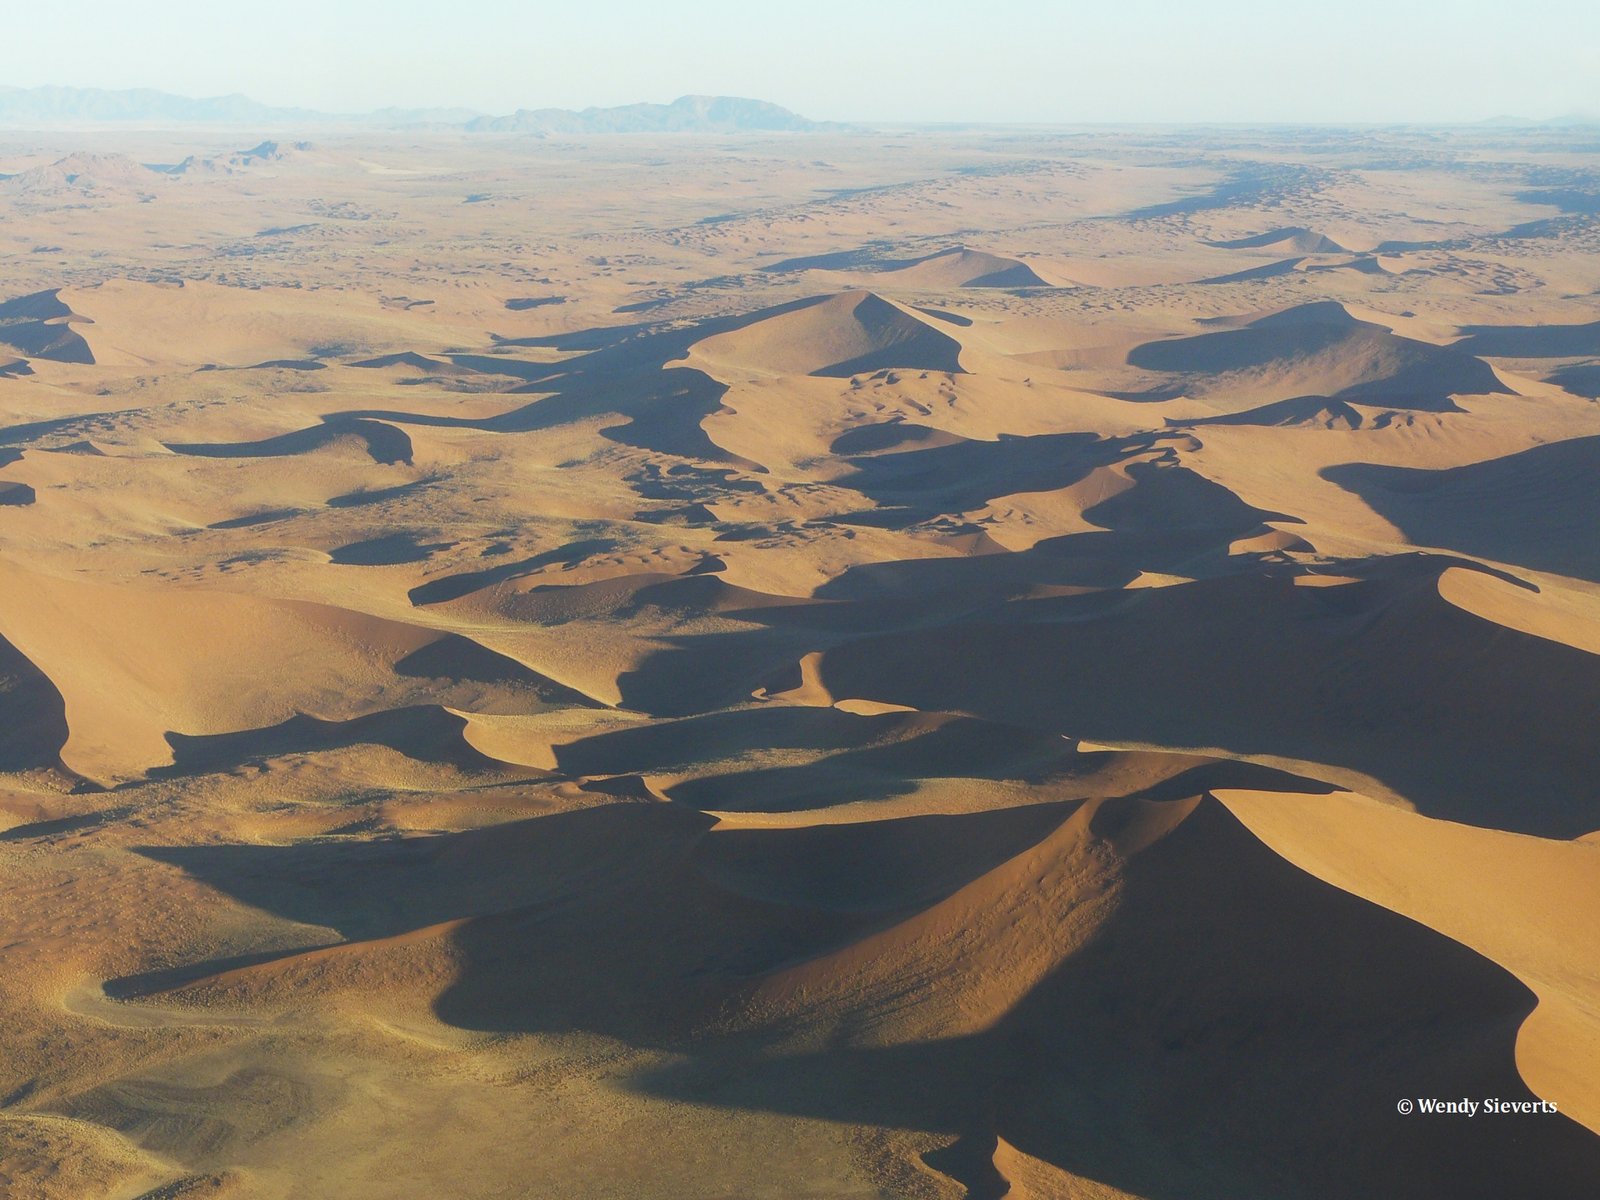 De rood en bruine zandduinen van de Sossusvlei in Namibië vanuit de lucht gefotografeerd